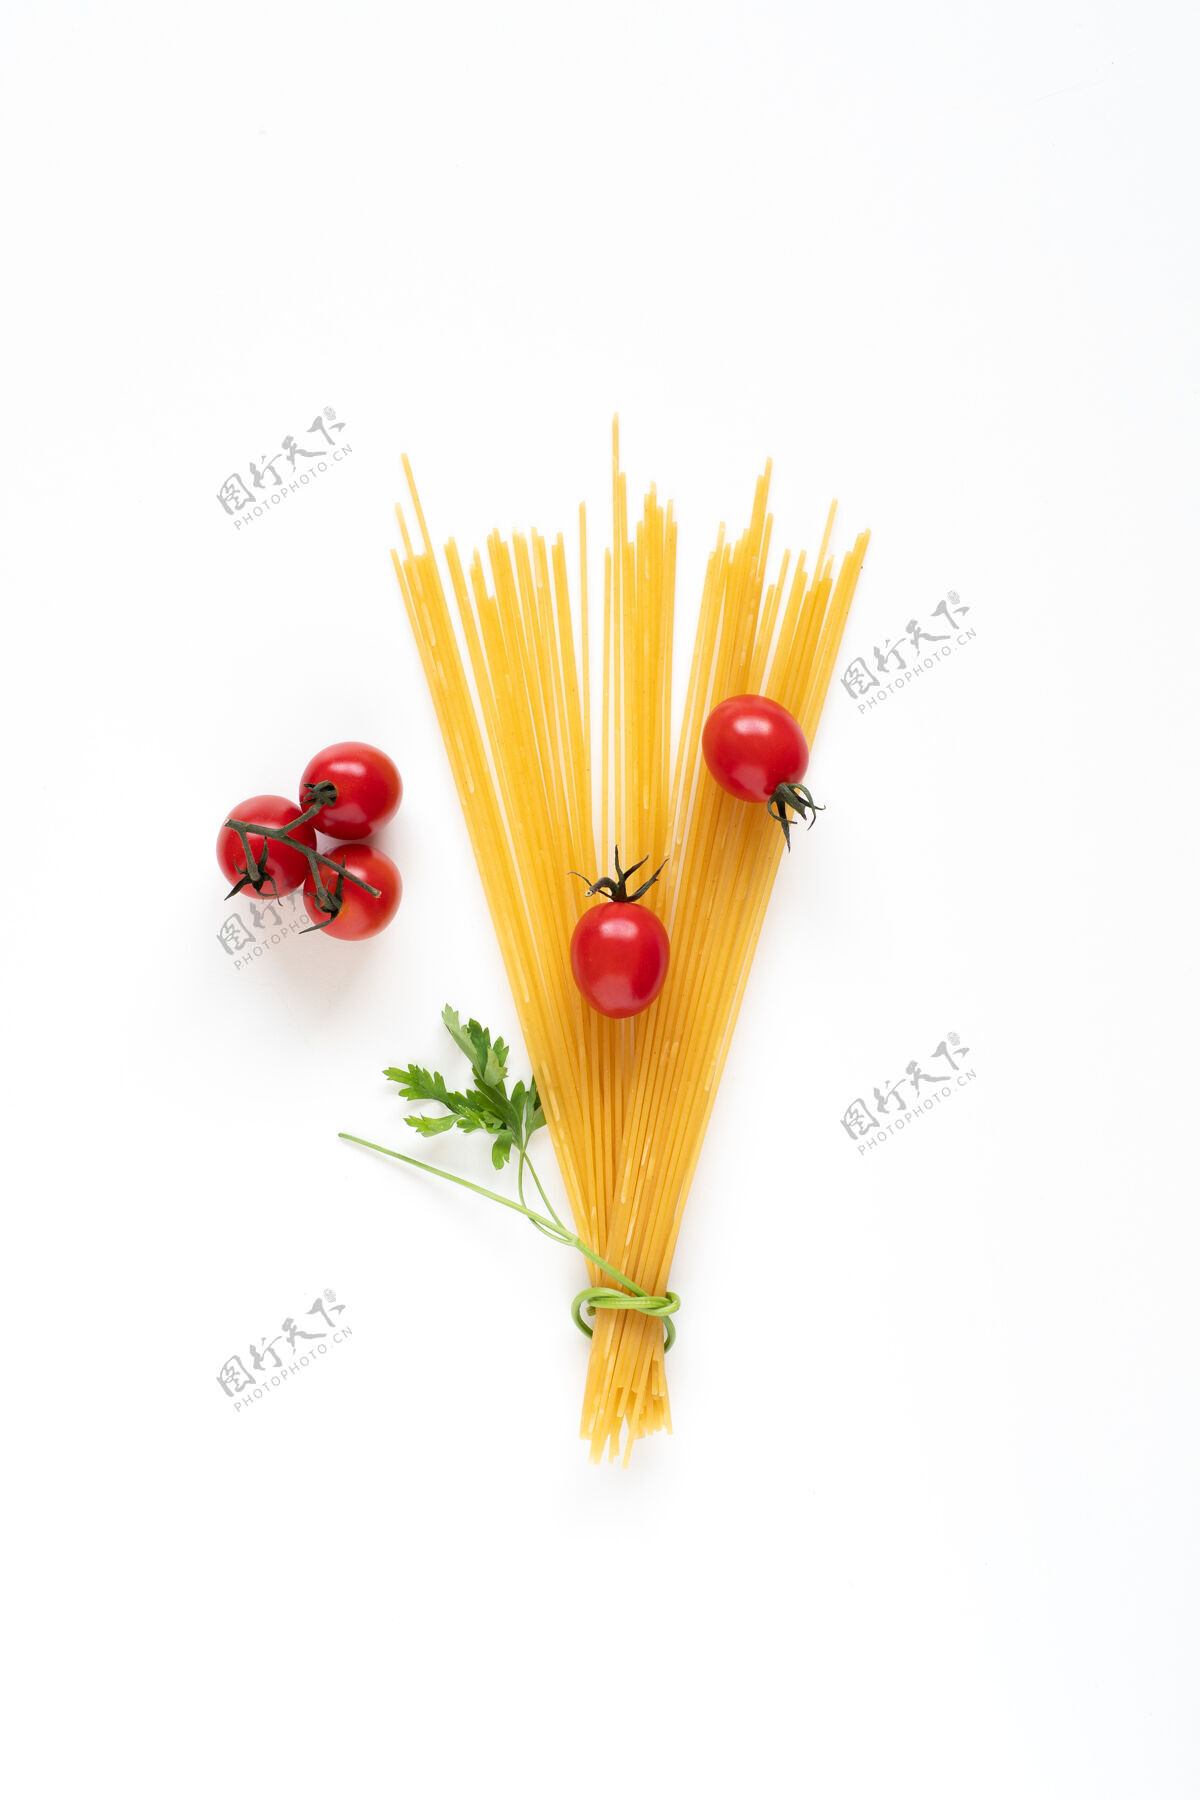 垂直平铺的生意大利面原料排列成一束在白色表面上番茄营养意大利